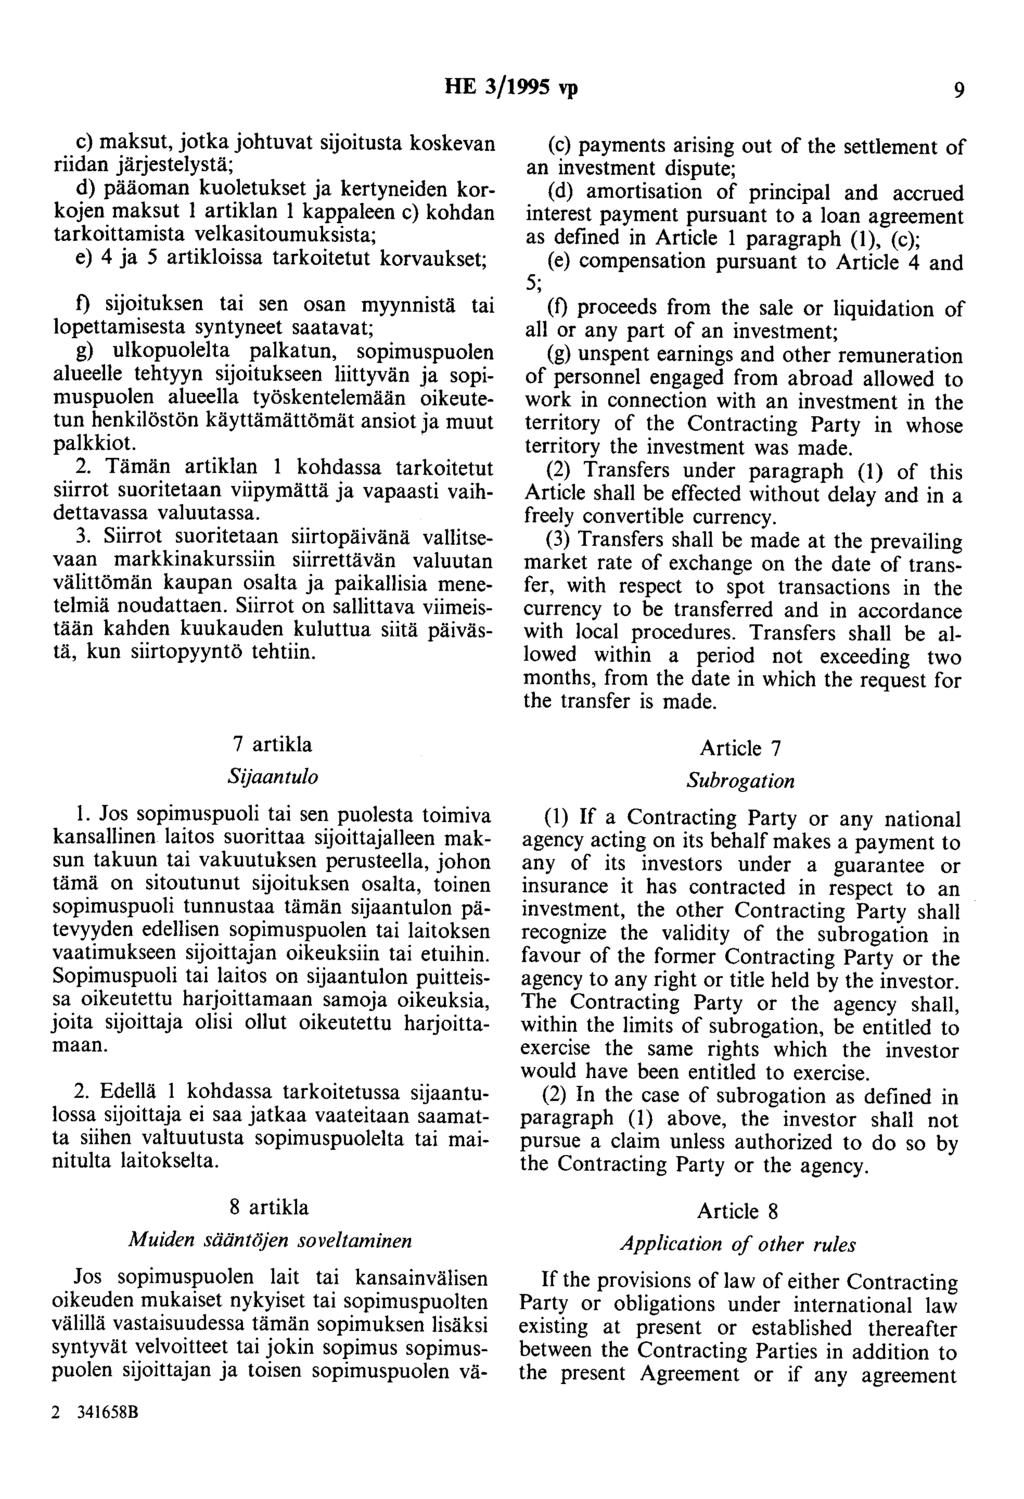 HE 3/1995 vp 9 c) maksut, jotka johtuvat sijoitusta koskevan riidan järjestelystä; d) pääoman kuoletukset ja kertyneiden korkojen maksut 1 artiklan 1 kappaleen c) kohdan tarkoittamista